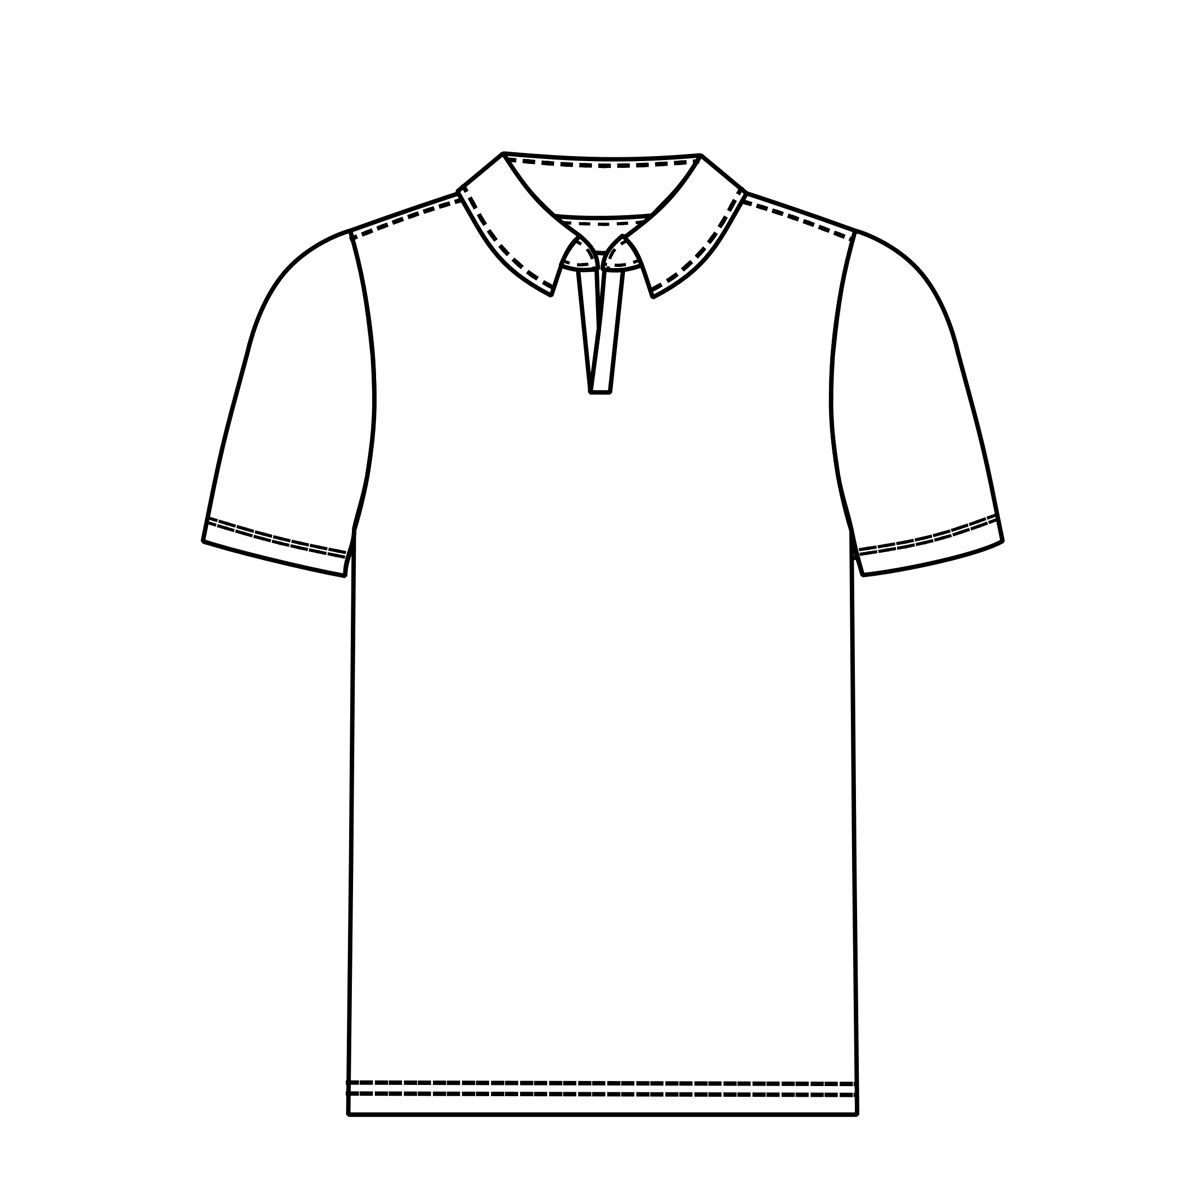 Molde Camiseta Polo Peitilho Diferenciado - Masculina